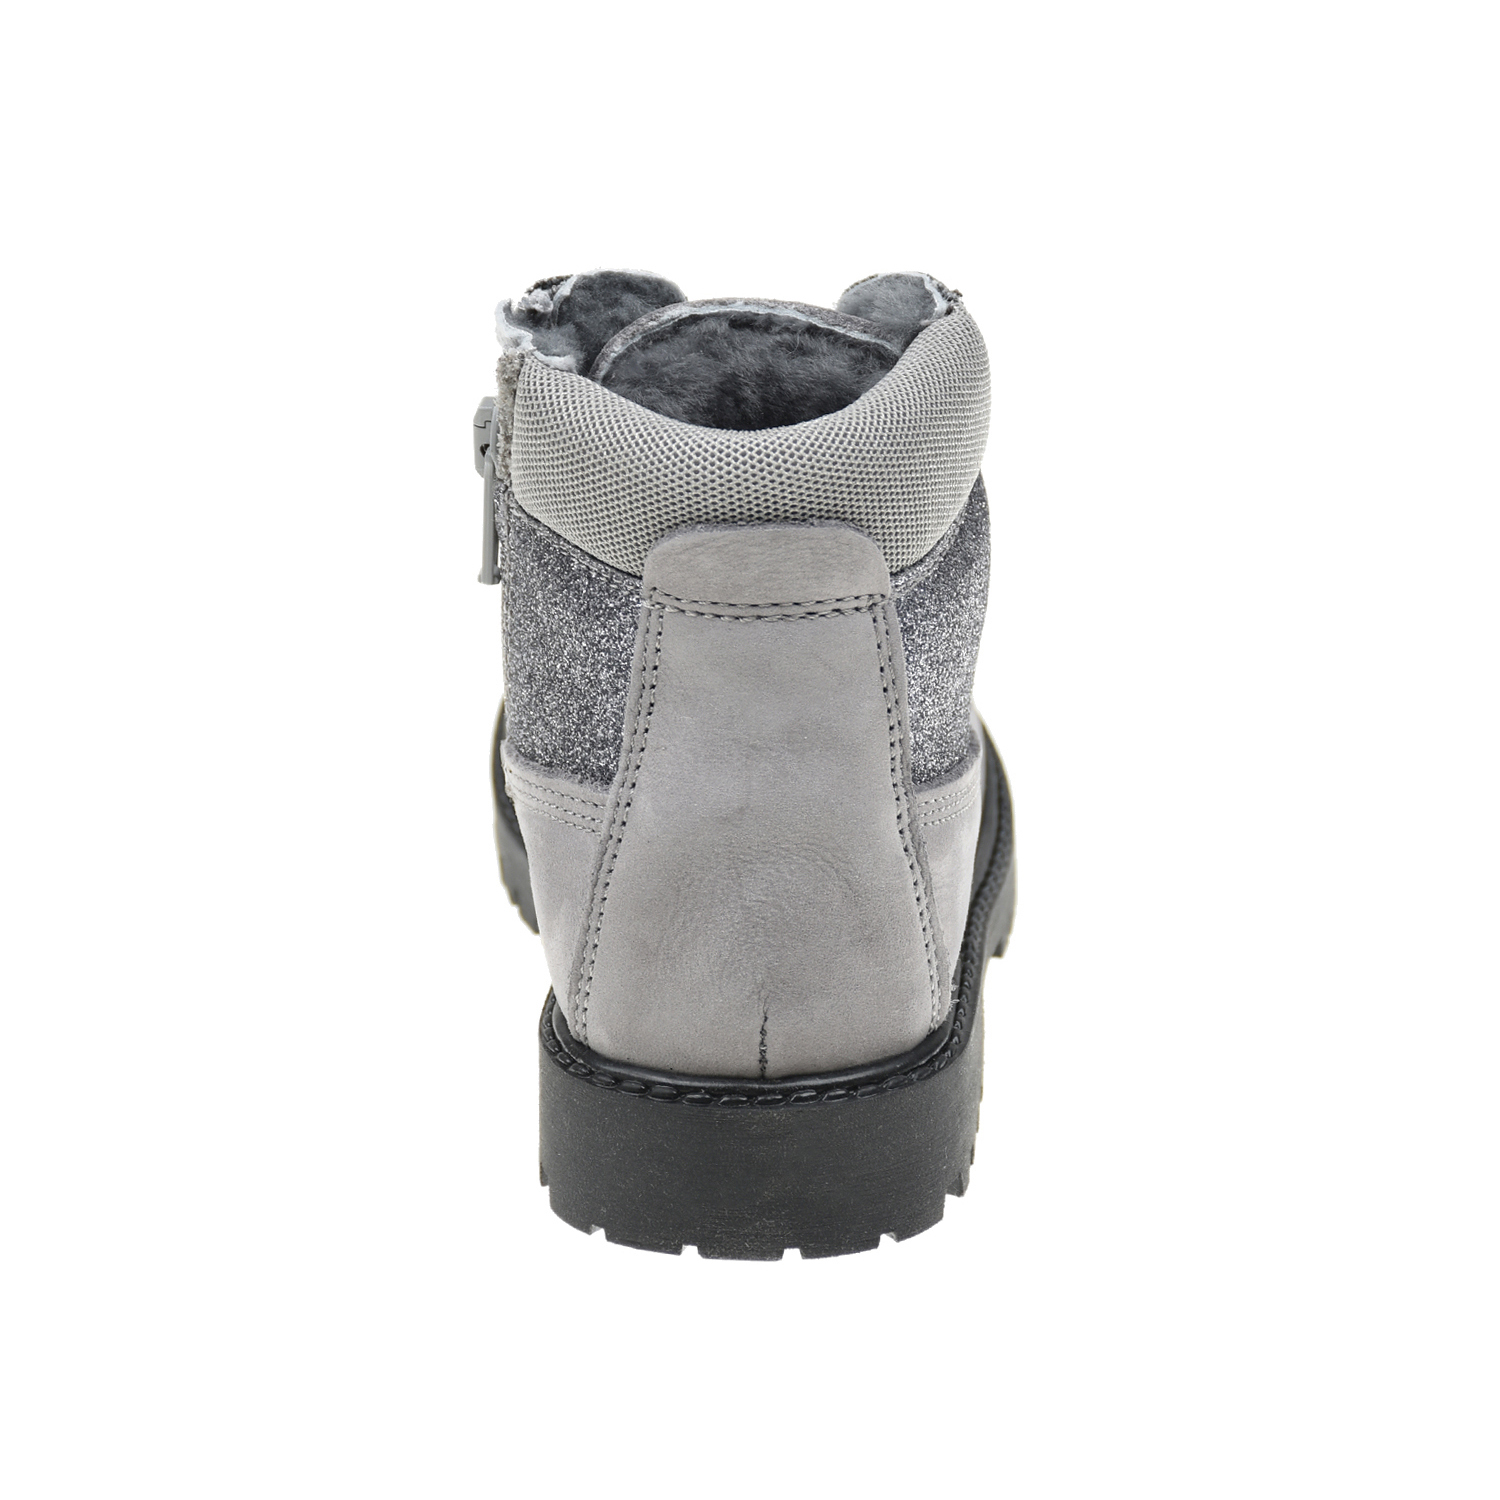 Кожаные ботинки с серебристыми вставками Monnalisa детские, размер 24, цвет серый - фото 3